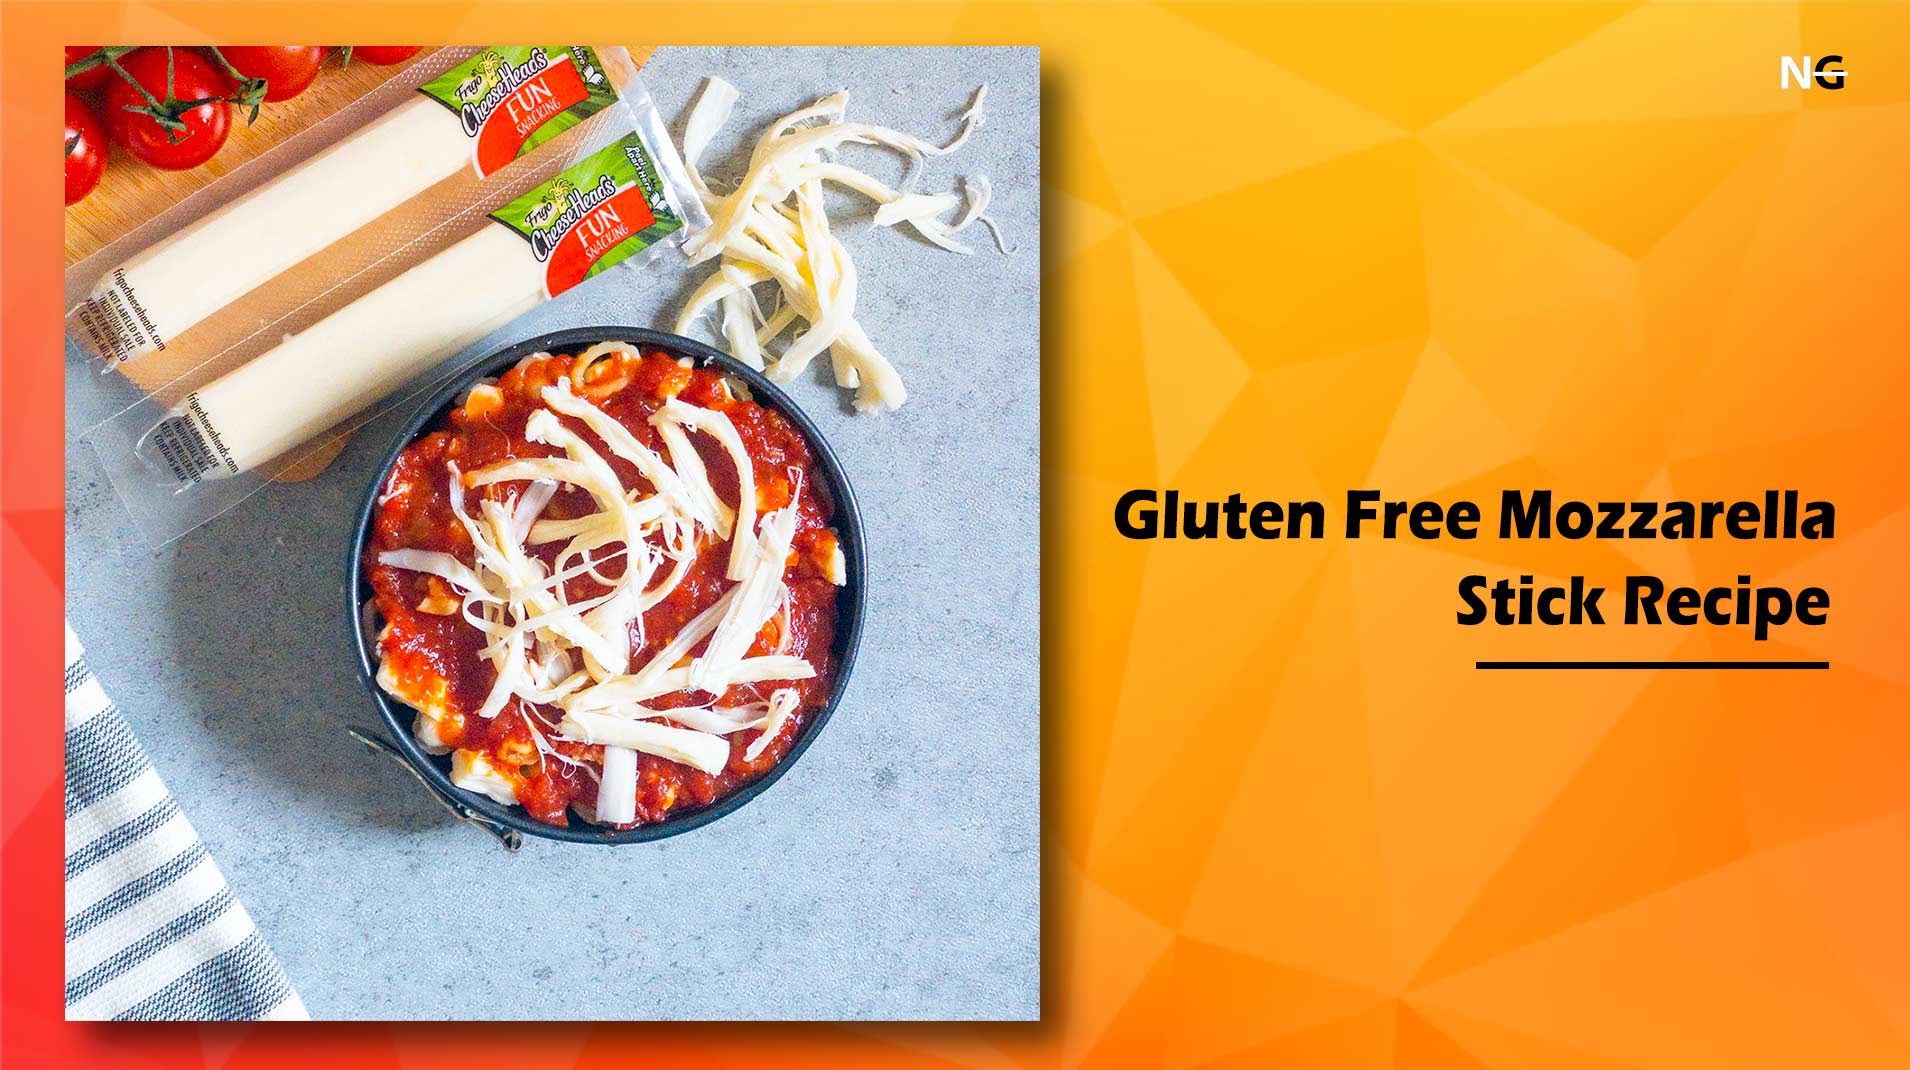 Gluten Free Mozzarella Stick Recipe